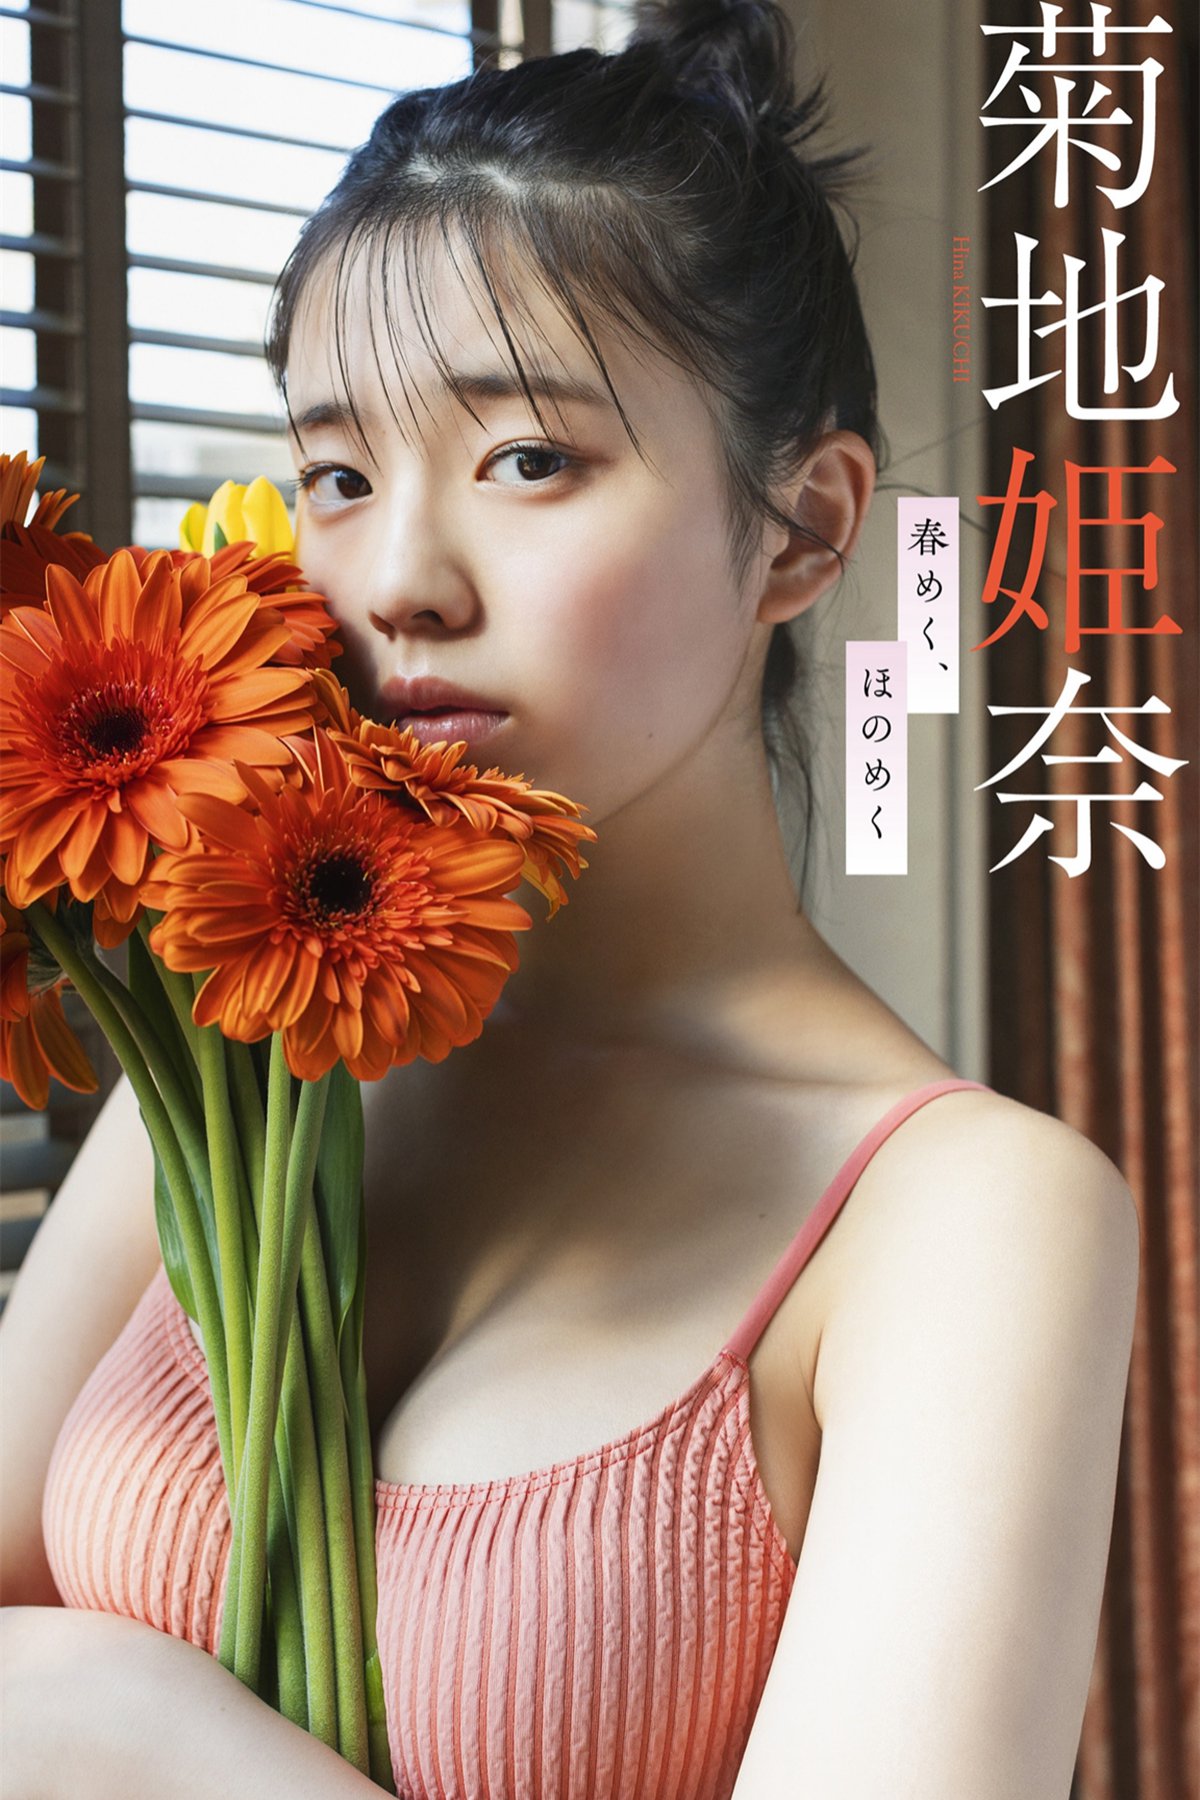 Weekly Photobook 2022-03-14 Hina Kikuchi 菊地姫奈 – Harumeku, honomeku 春めく、ほのめく